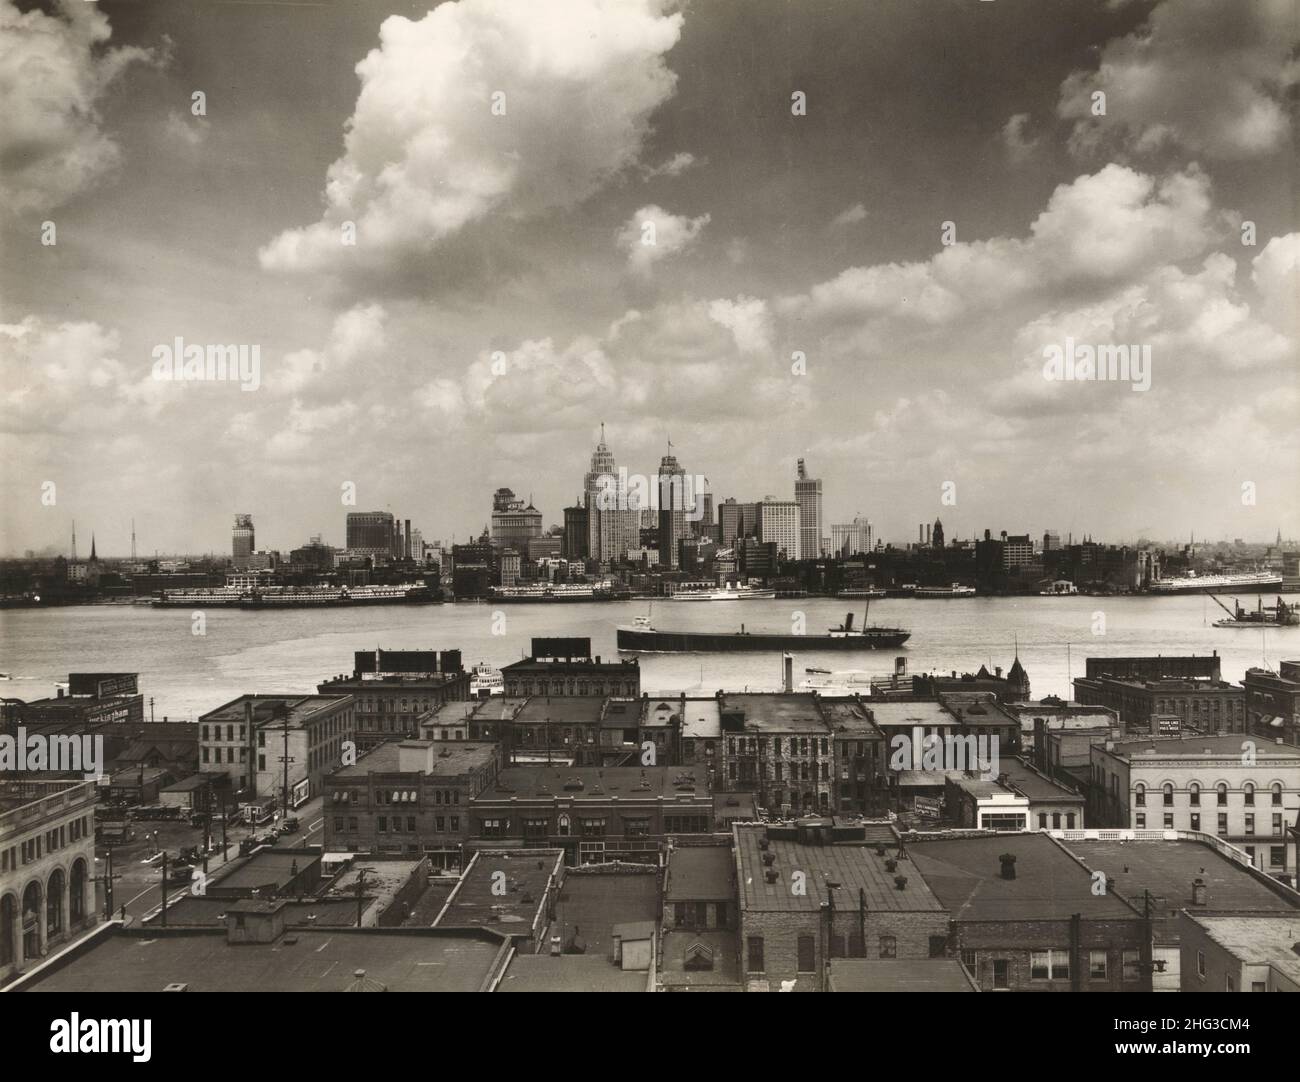 Vintage-Foto der Skyline von Detroit. Skyline von Detroit und Boote auf dem Detroit River aus Sicht von Windsor, Ontario(?). Im Vordergrund, Dächer des Gebäudes Stockfoto